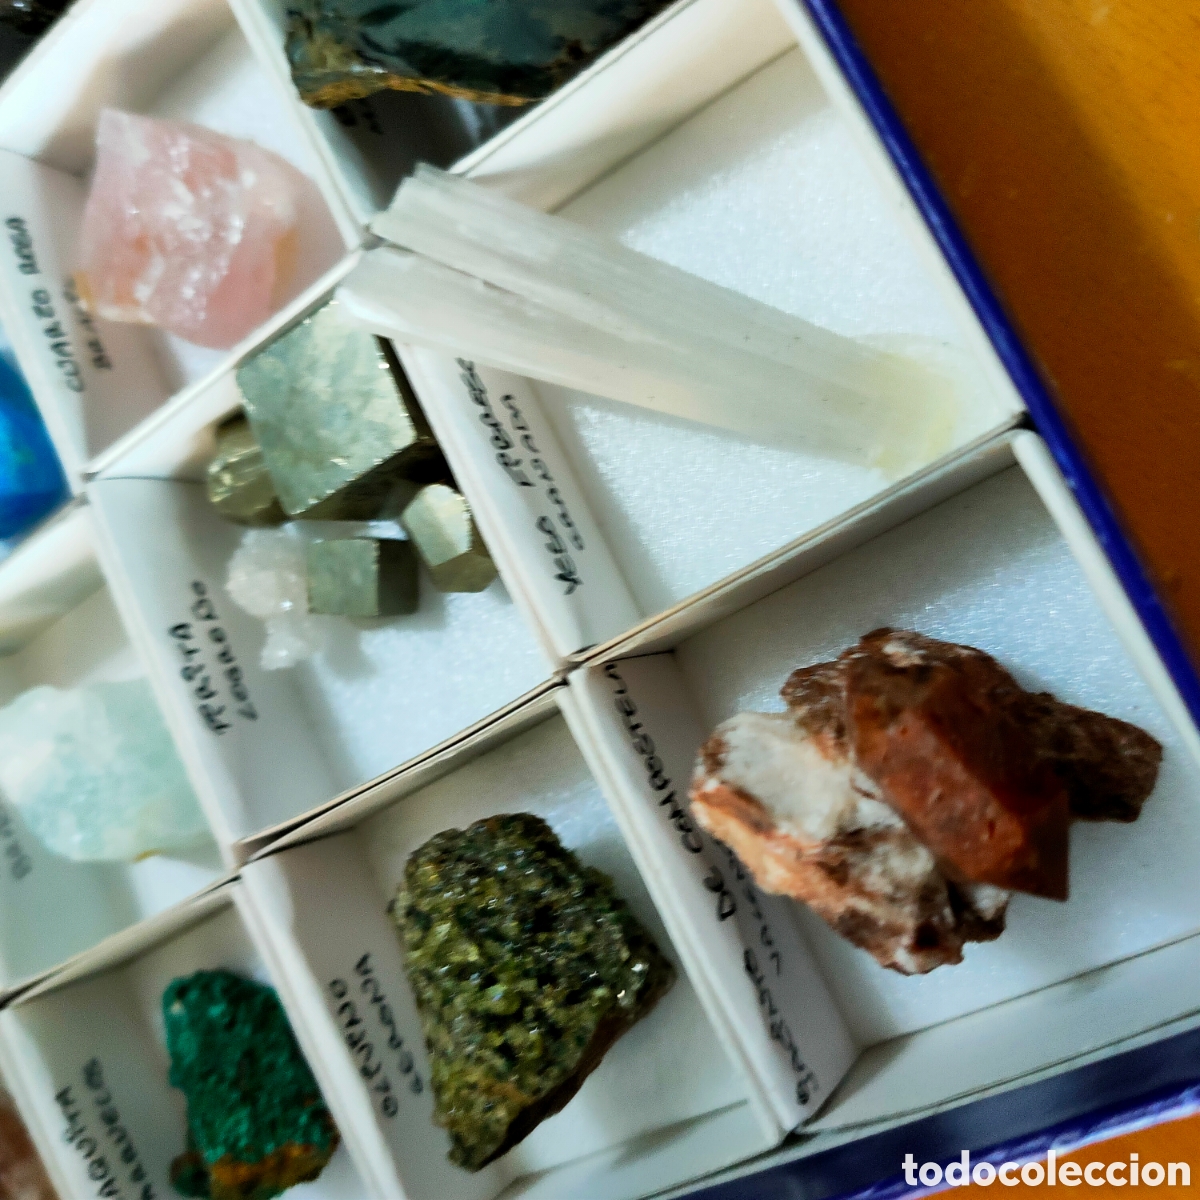 caja minerales - Compra venta en todocoleccion